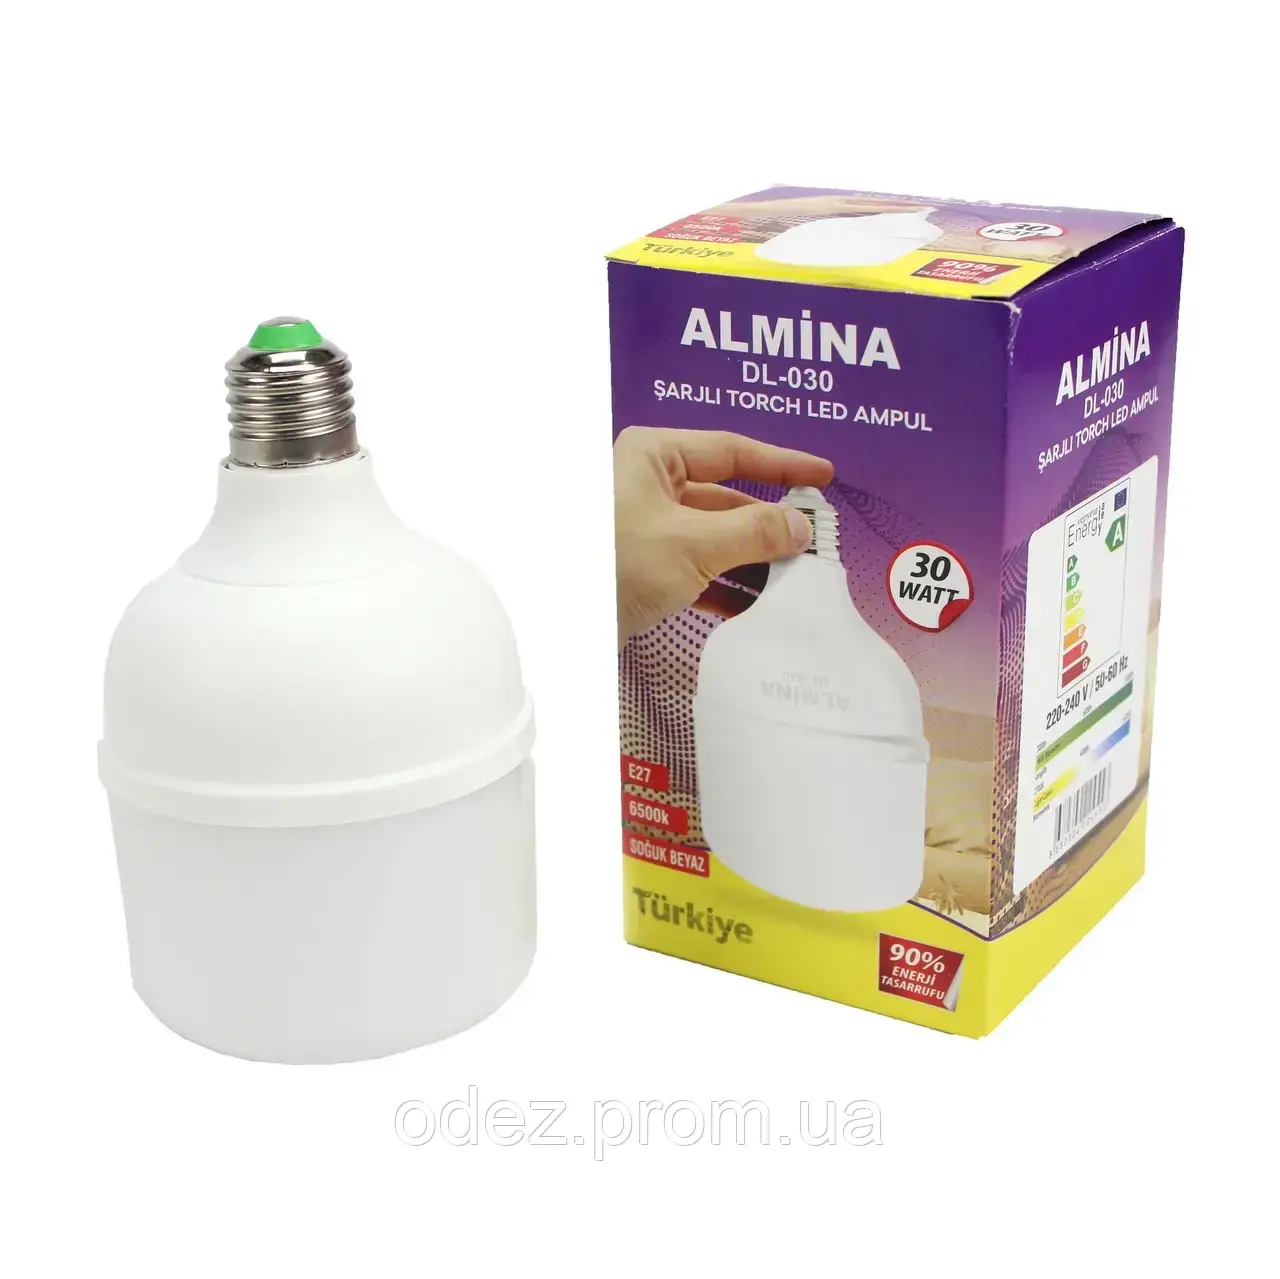 Акумуляторна лампочка Almina DL-030 (30 Вт), LED-лампочка з цоколем E27